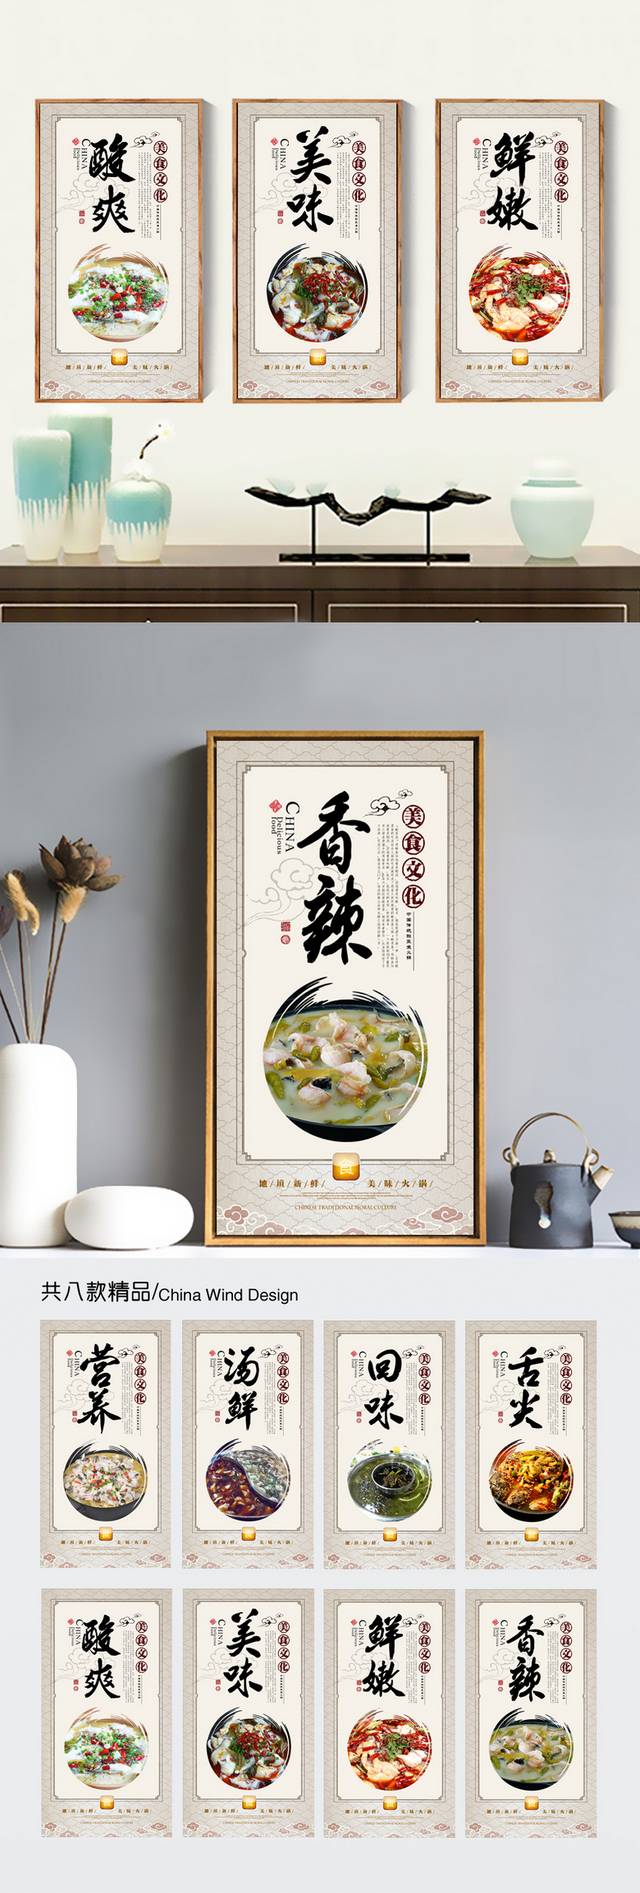 经典美味酸菜鱼火锅文化展板宣传海报